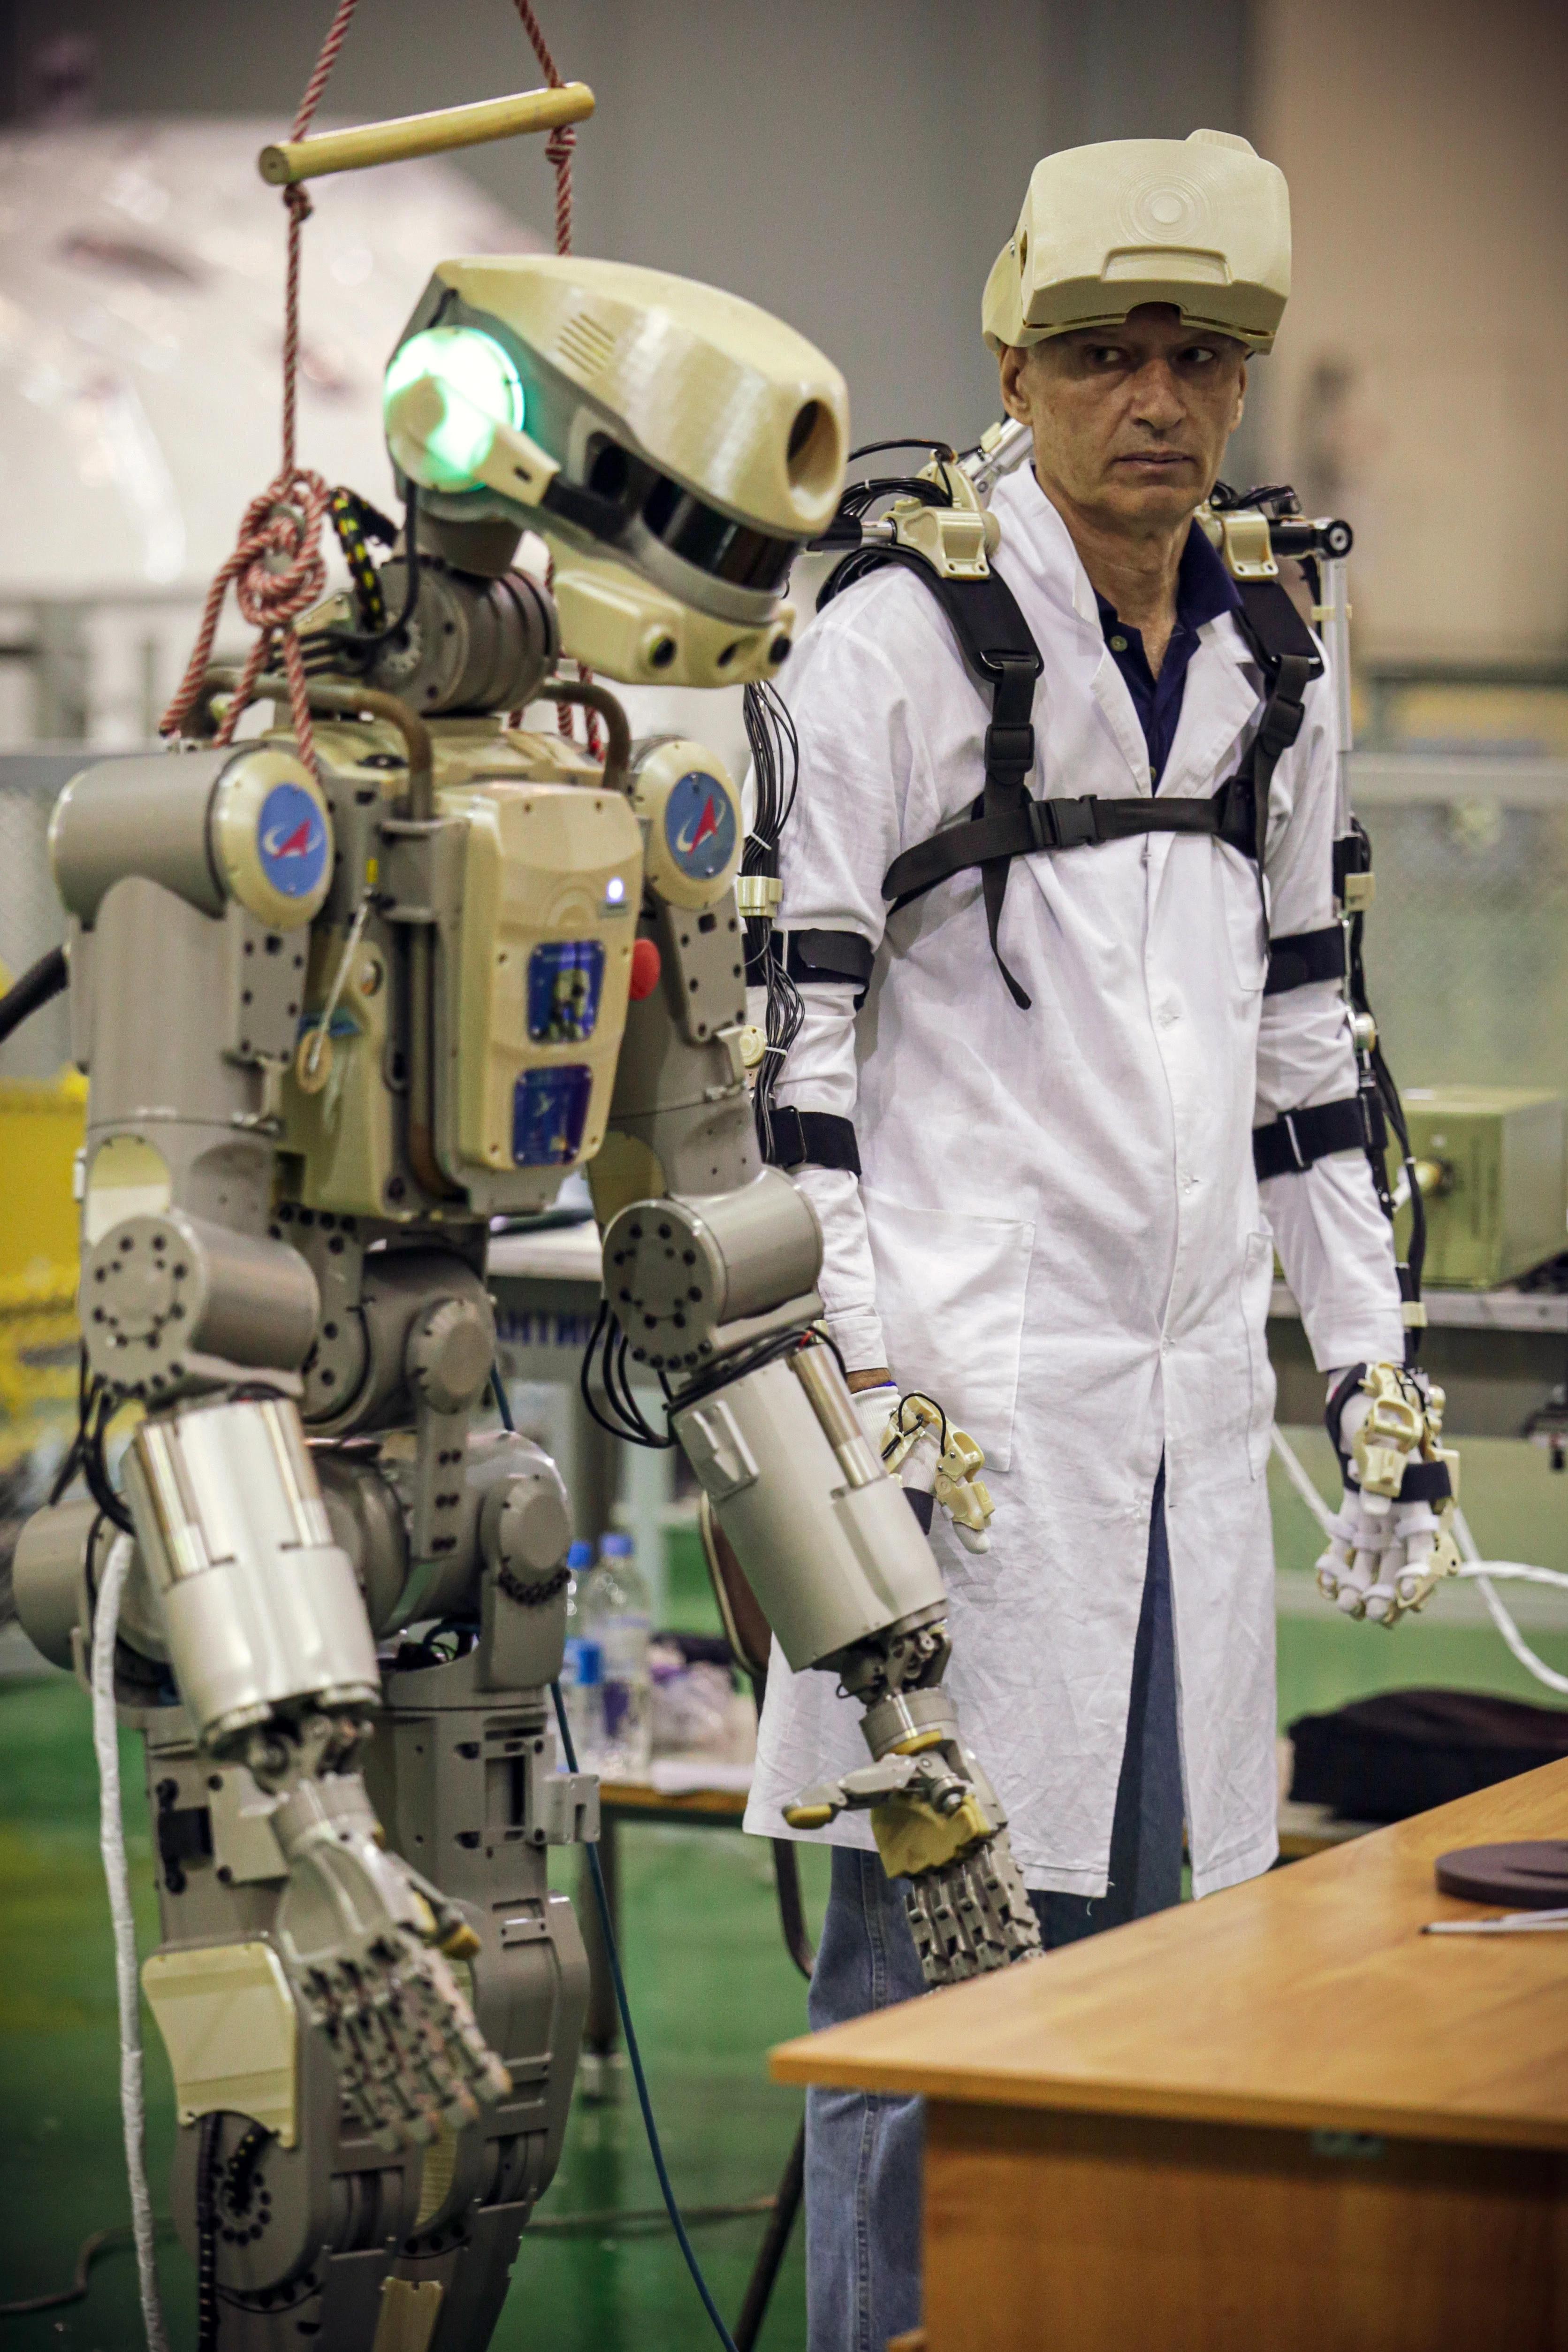 俄罗斯将真人大小的机器人送入太空 